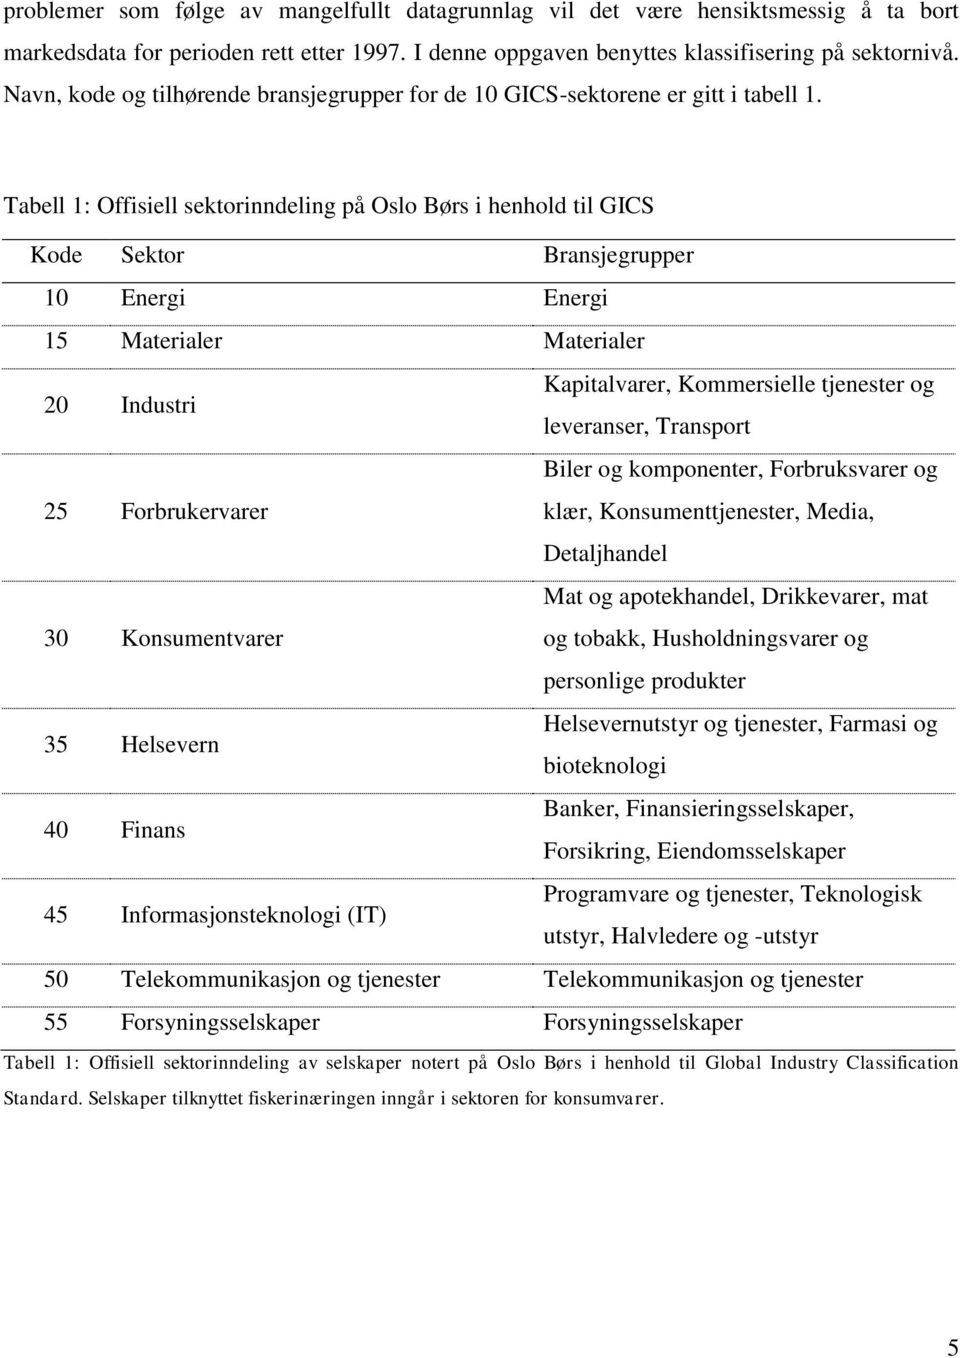 Tabell 1: Offisiell sektorinndeling på Oslo Børs i henhold til GICS Kode Sektor Bransjegrupper 10 Energi Energi 15 Materialer Materialer 20 Industri Kapitalvarer, Kommersielle tjenester og